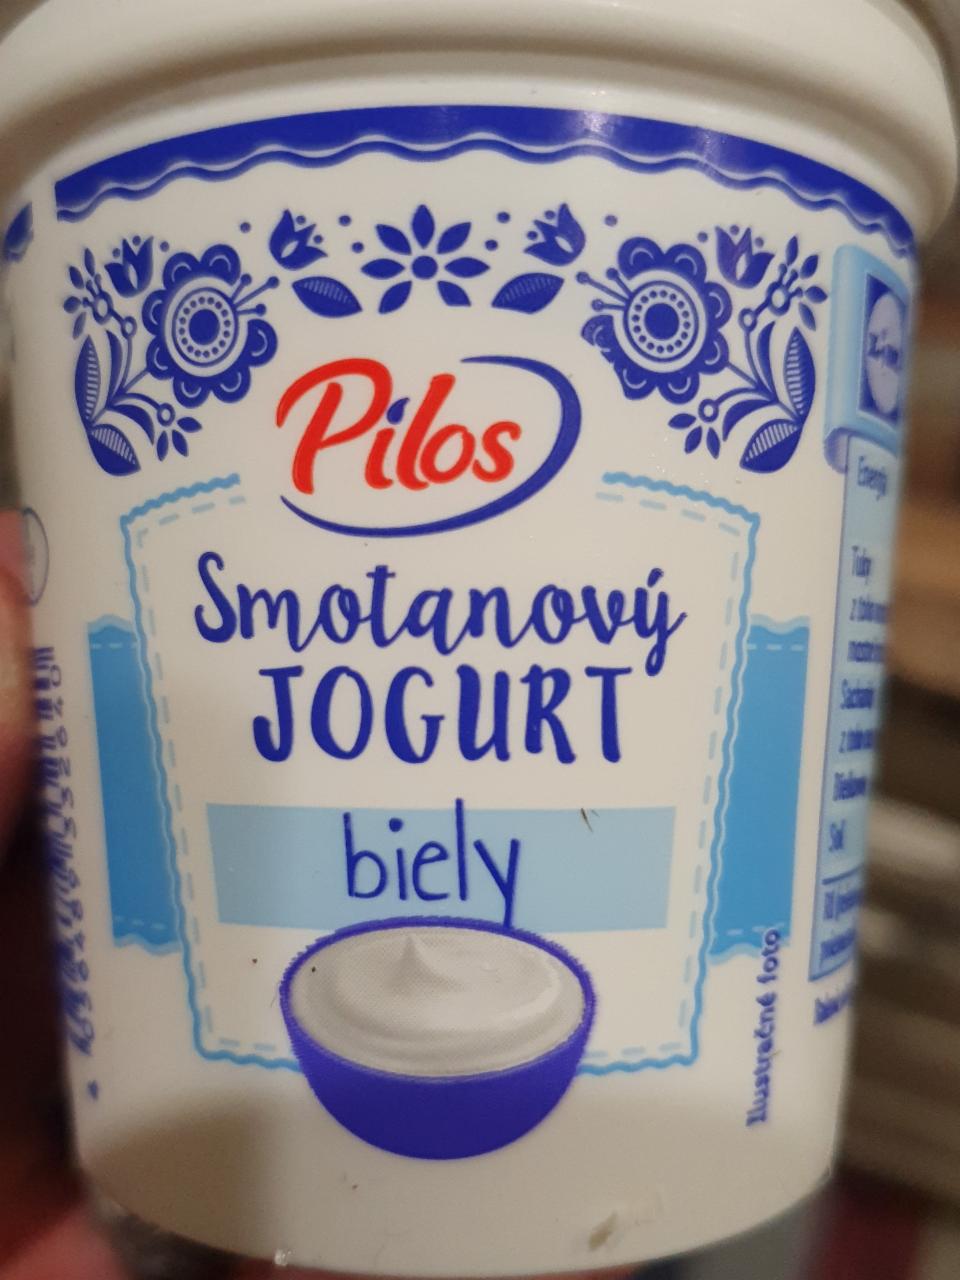 Fotografie - Pilos smotanový jogurt biely